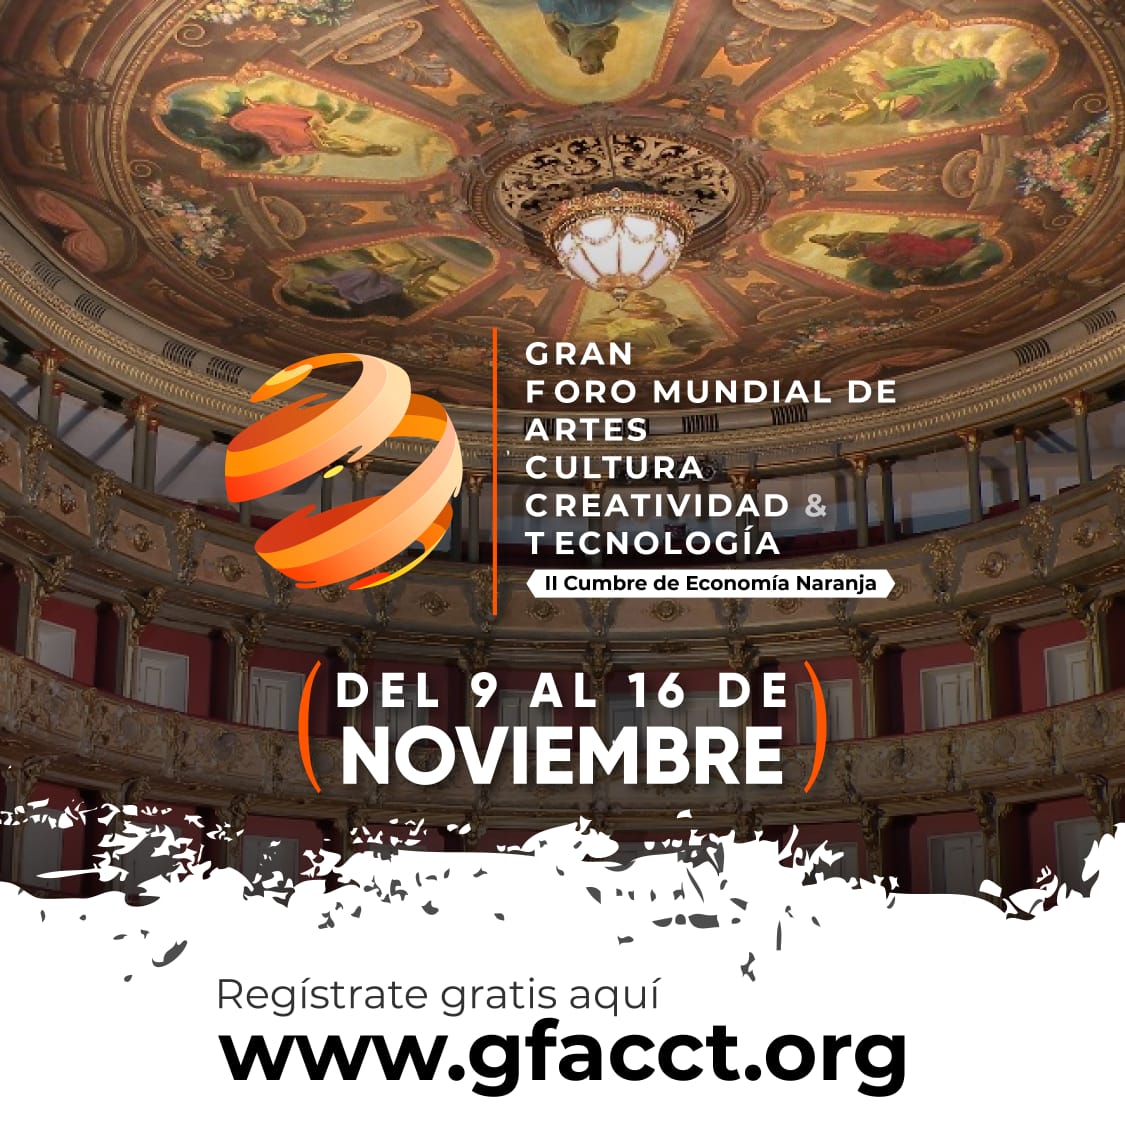 Inicia el Gran Foro Mundial de Artes, Cultura, Creatividad & Tecnología- GFACCT 2020